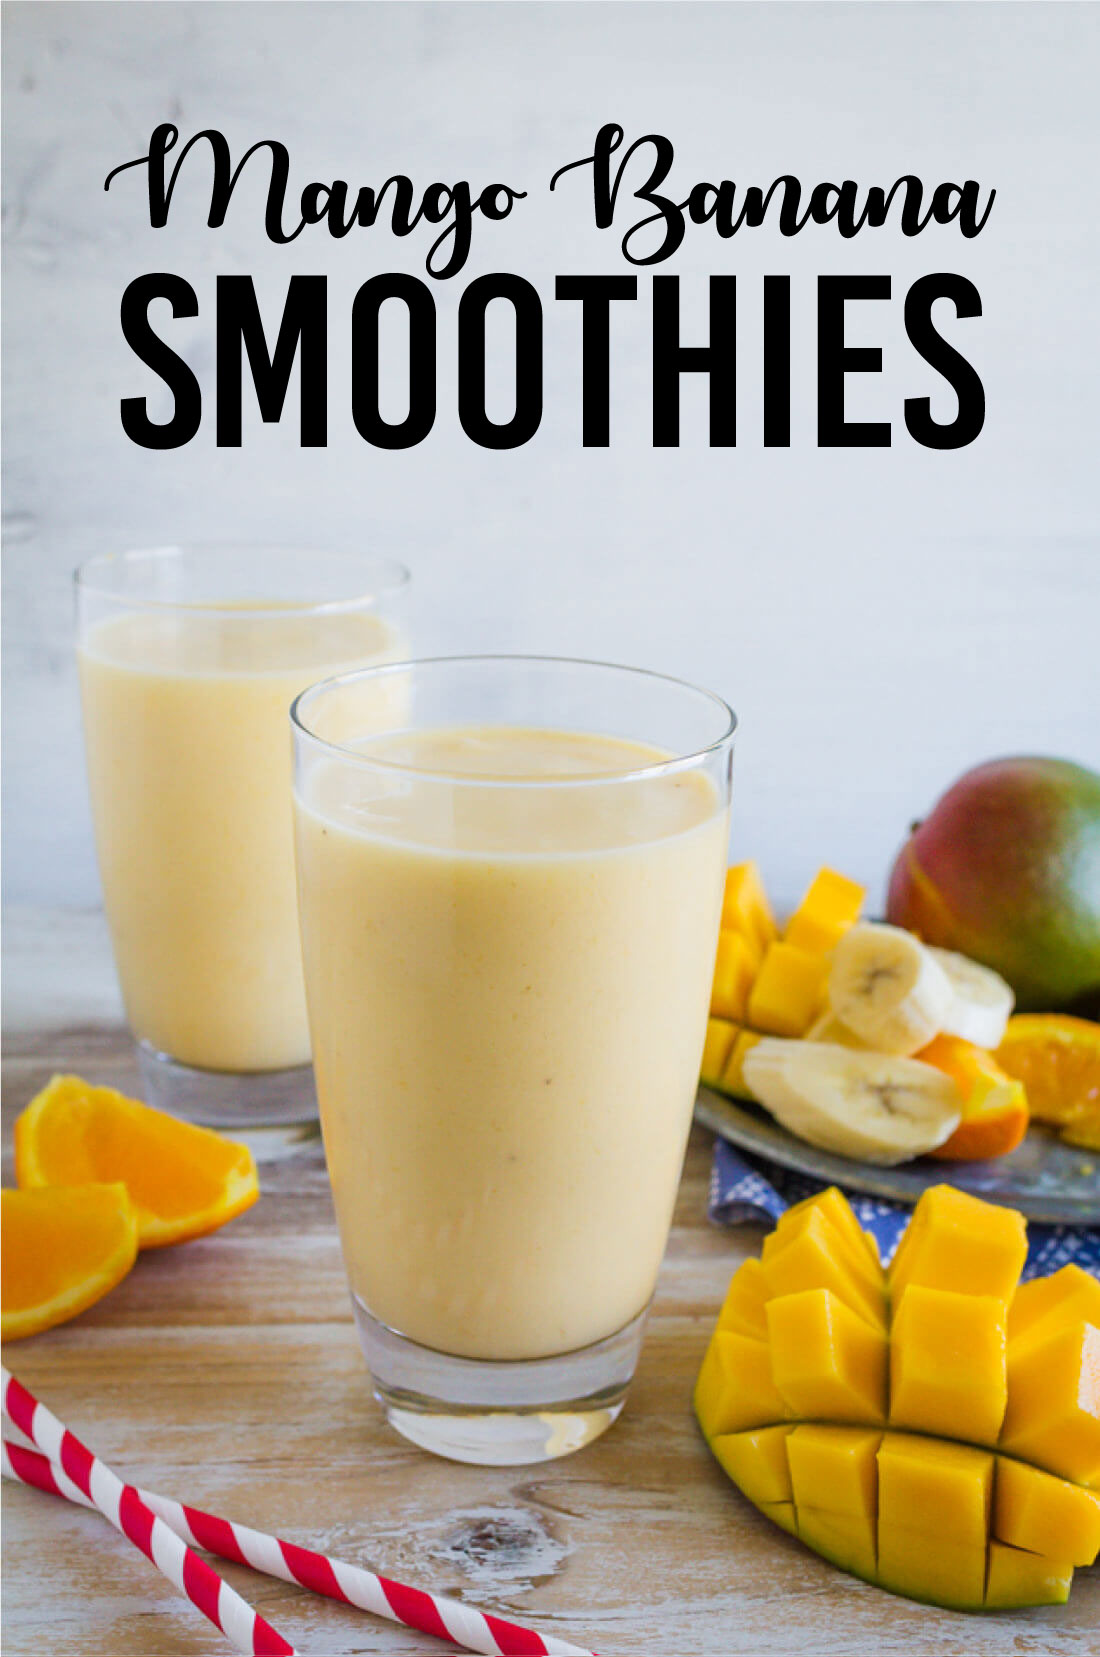 Super easy smoothie recipe to make - how to make a mango smoothie! www.thirtyhandmadedays.com